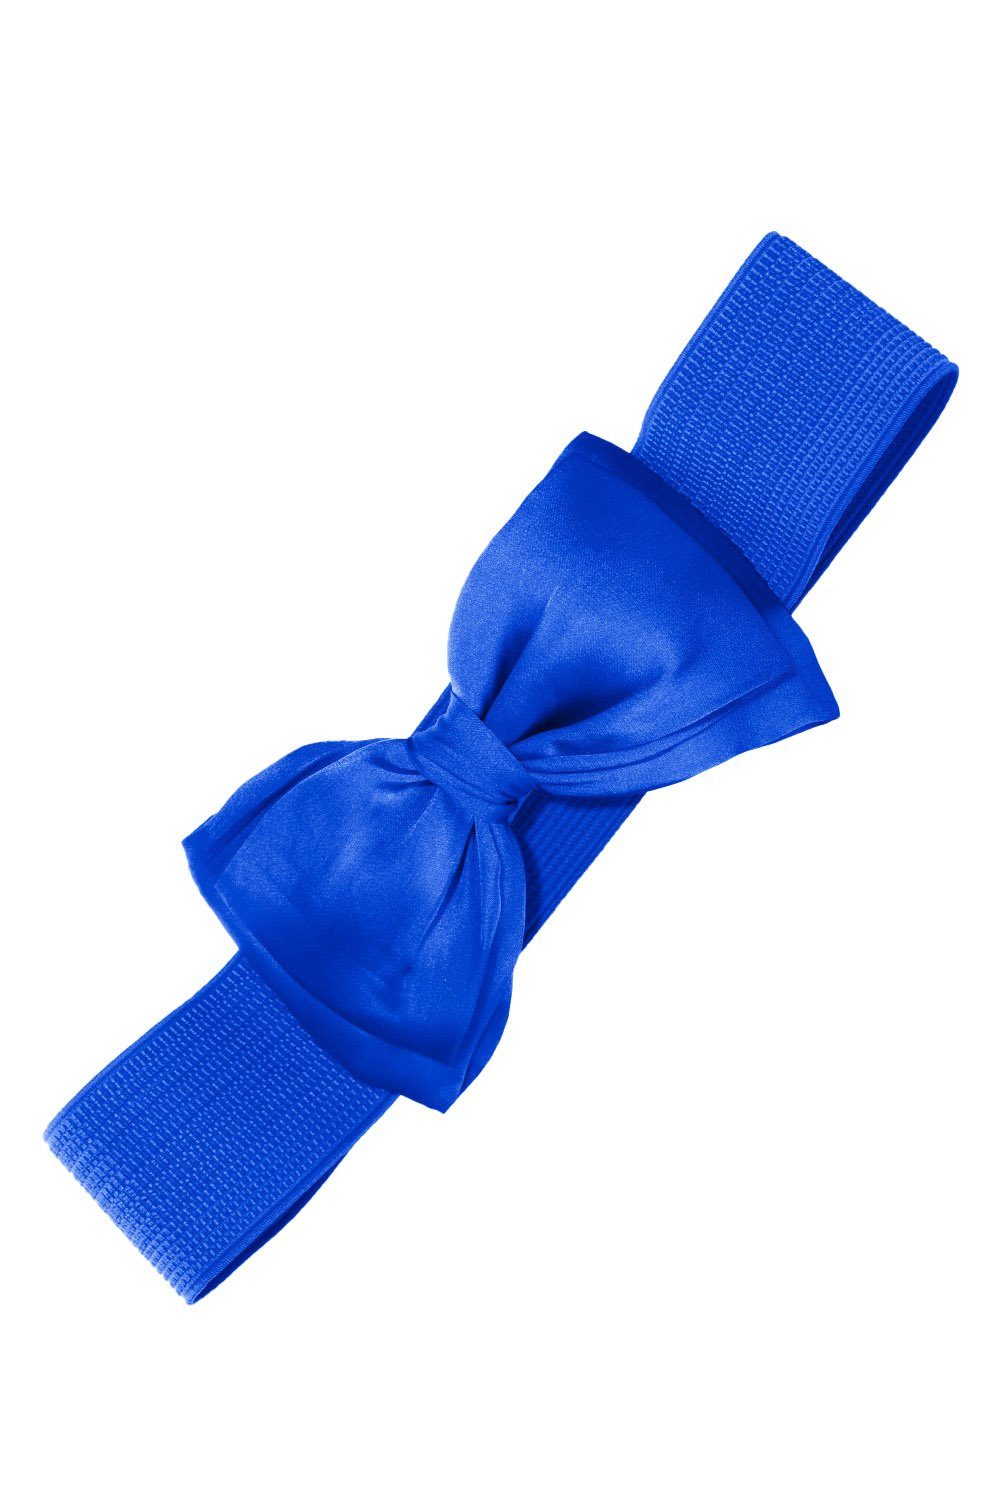 Banned Taillengürtel Bella Belt Blau Vintage Schleife Retro Stretchgürtel